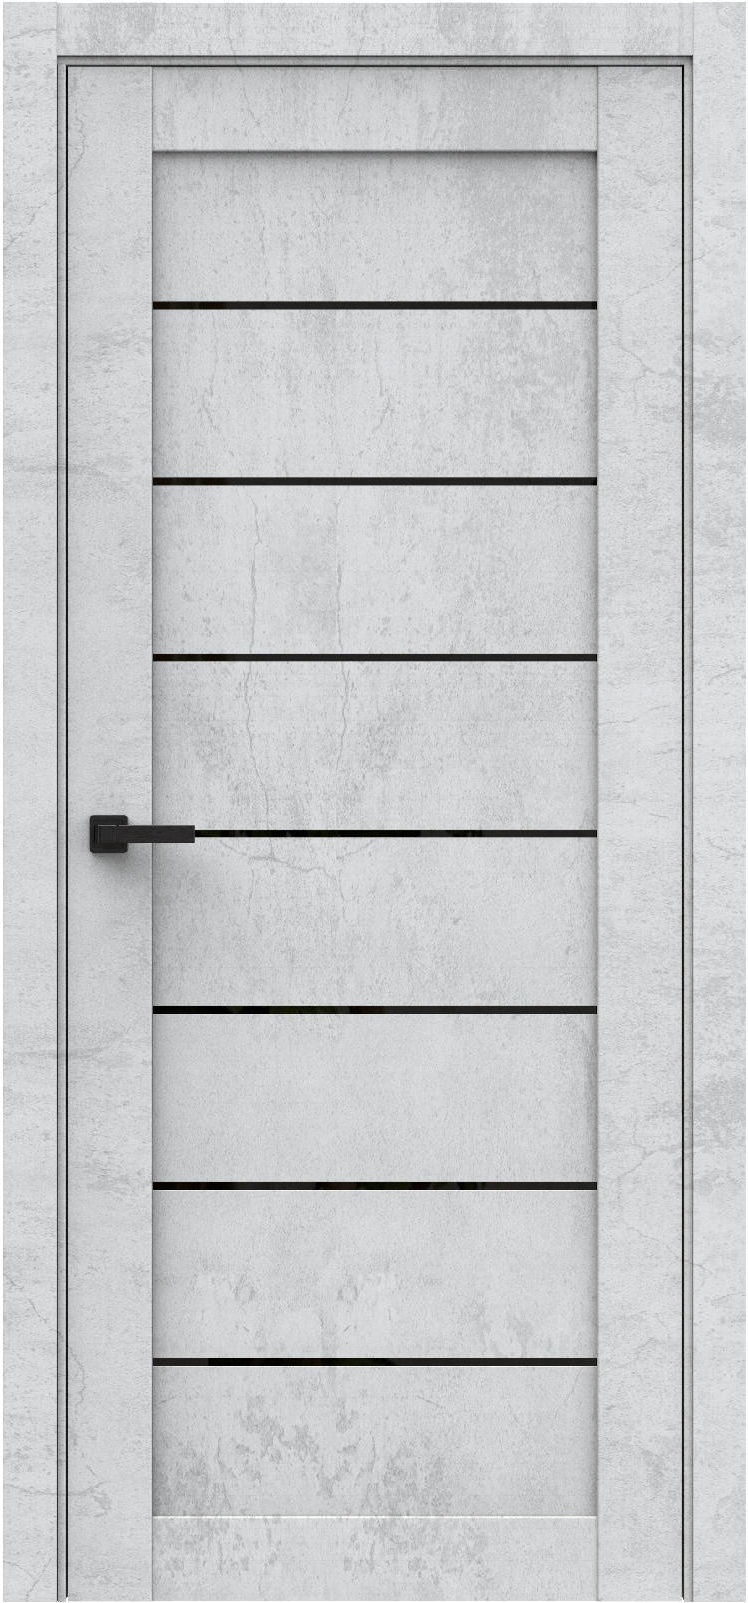 Questdoors Межкомнатная дверь Q47, арт. 26236 - фото №1